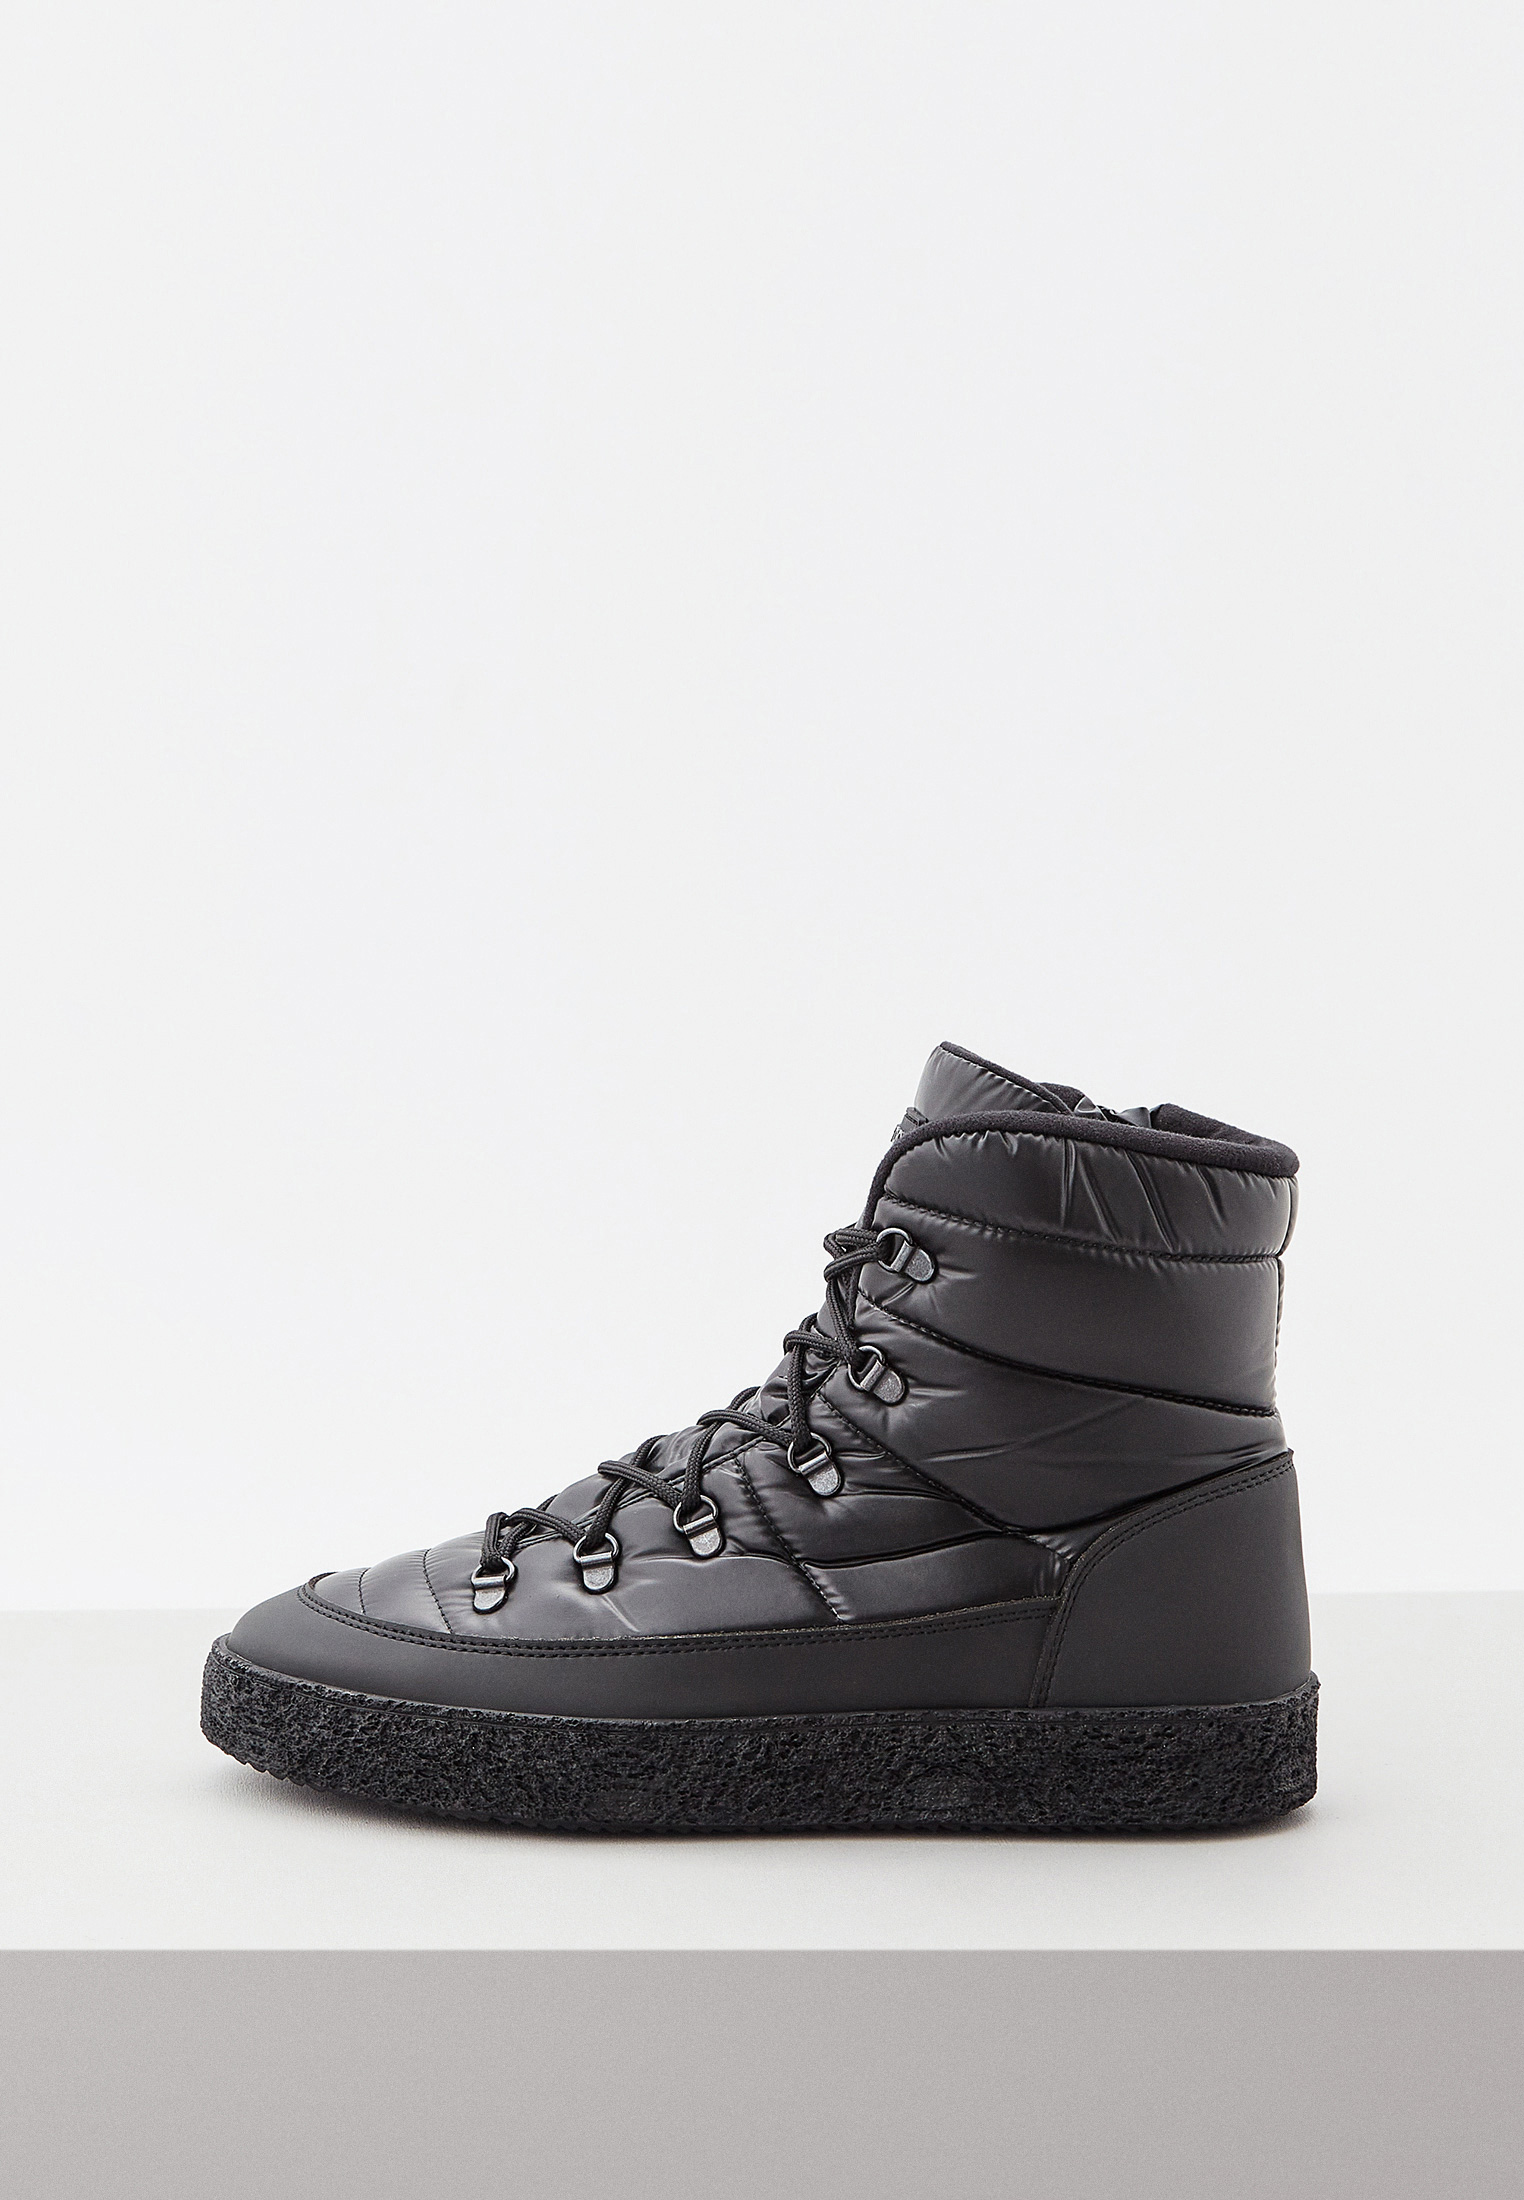 Ботинки Jog Dog, цвет: черный, RTLAAX589101 — купить в интернет-магазине Lamoda